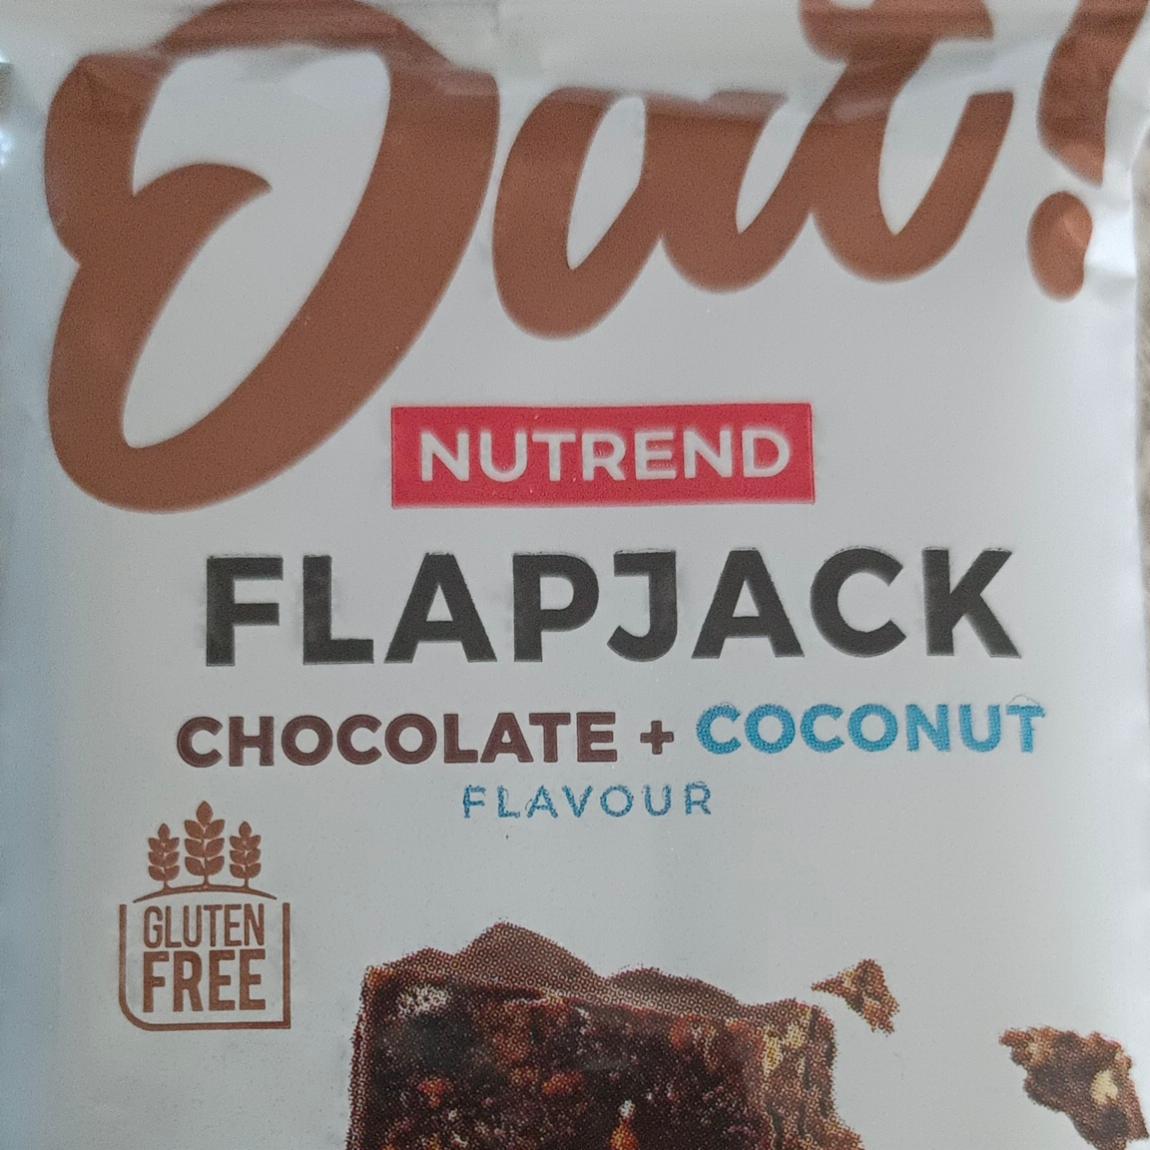 Fotografie - Flapjack Chocolate + coconut flavour with dark chocolate (čokoláda + kokos s hořkou čokoládou) Nutrend